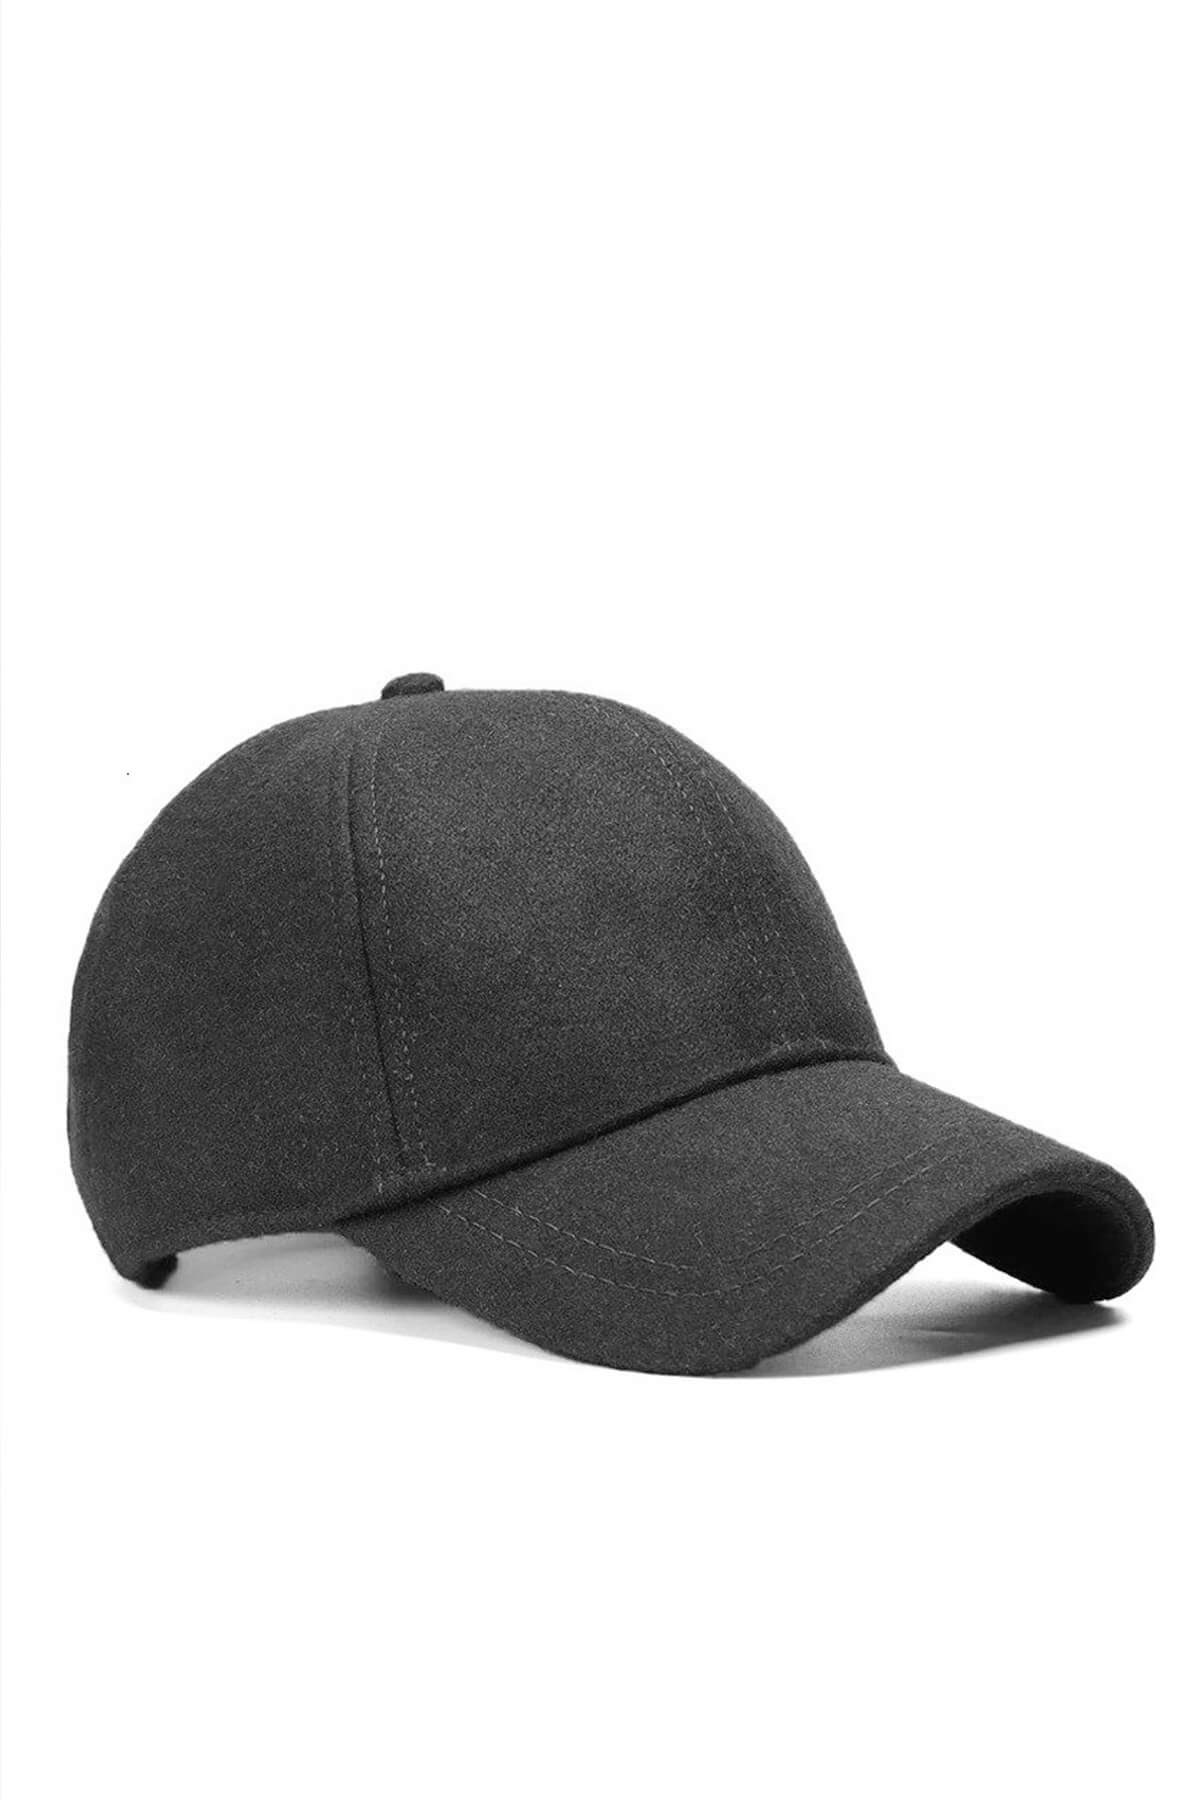 Külah Erkek Beyzbol Şapkası Yün Kışlık Kep-Antrasit KLH6875